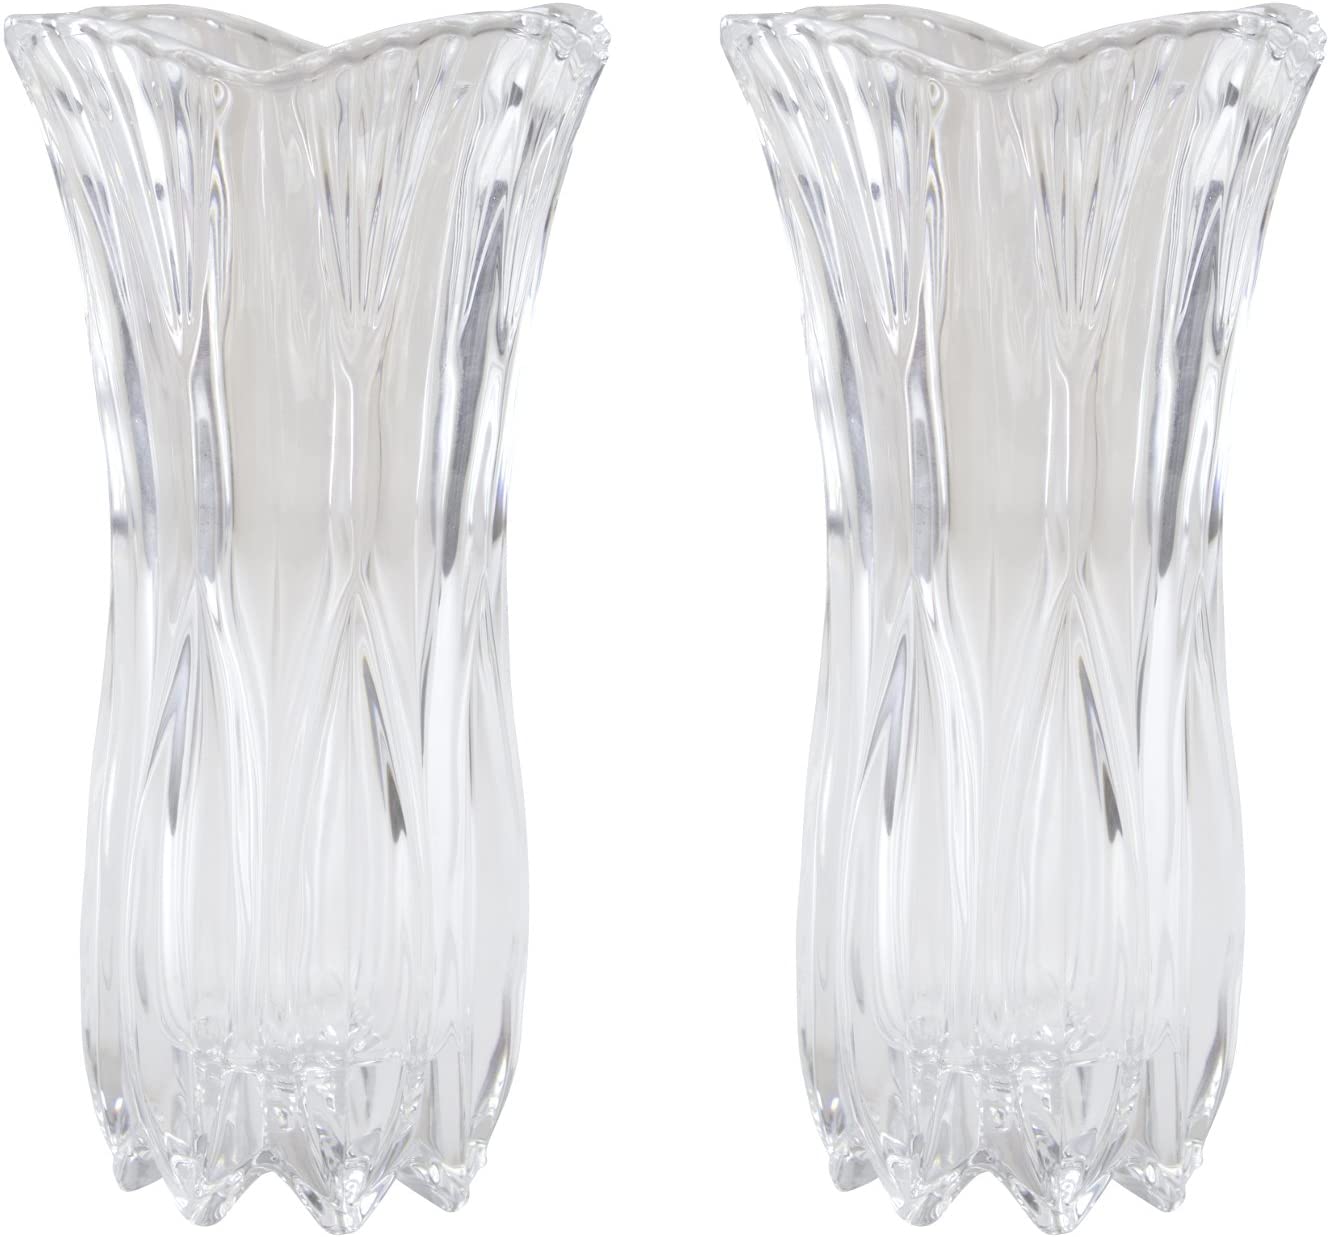 Decoline Glass Vase Transparent Design B – Pack of 2 – L